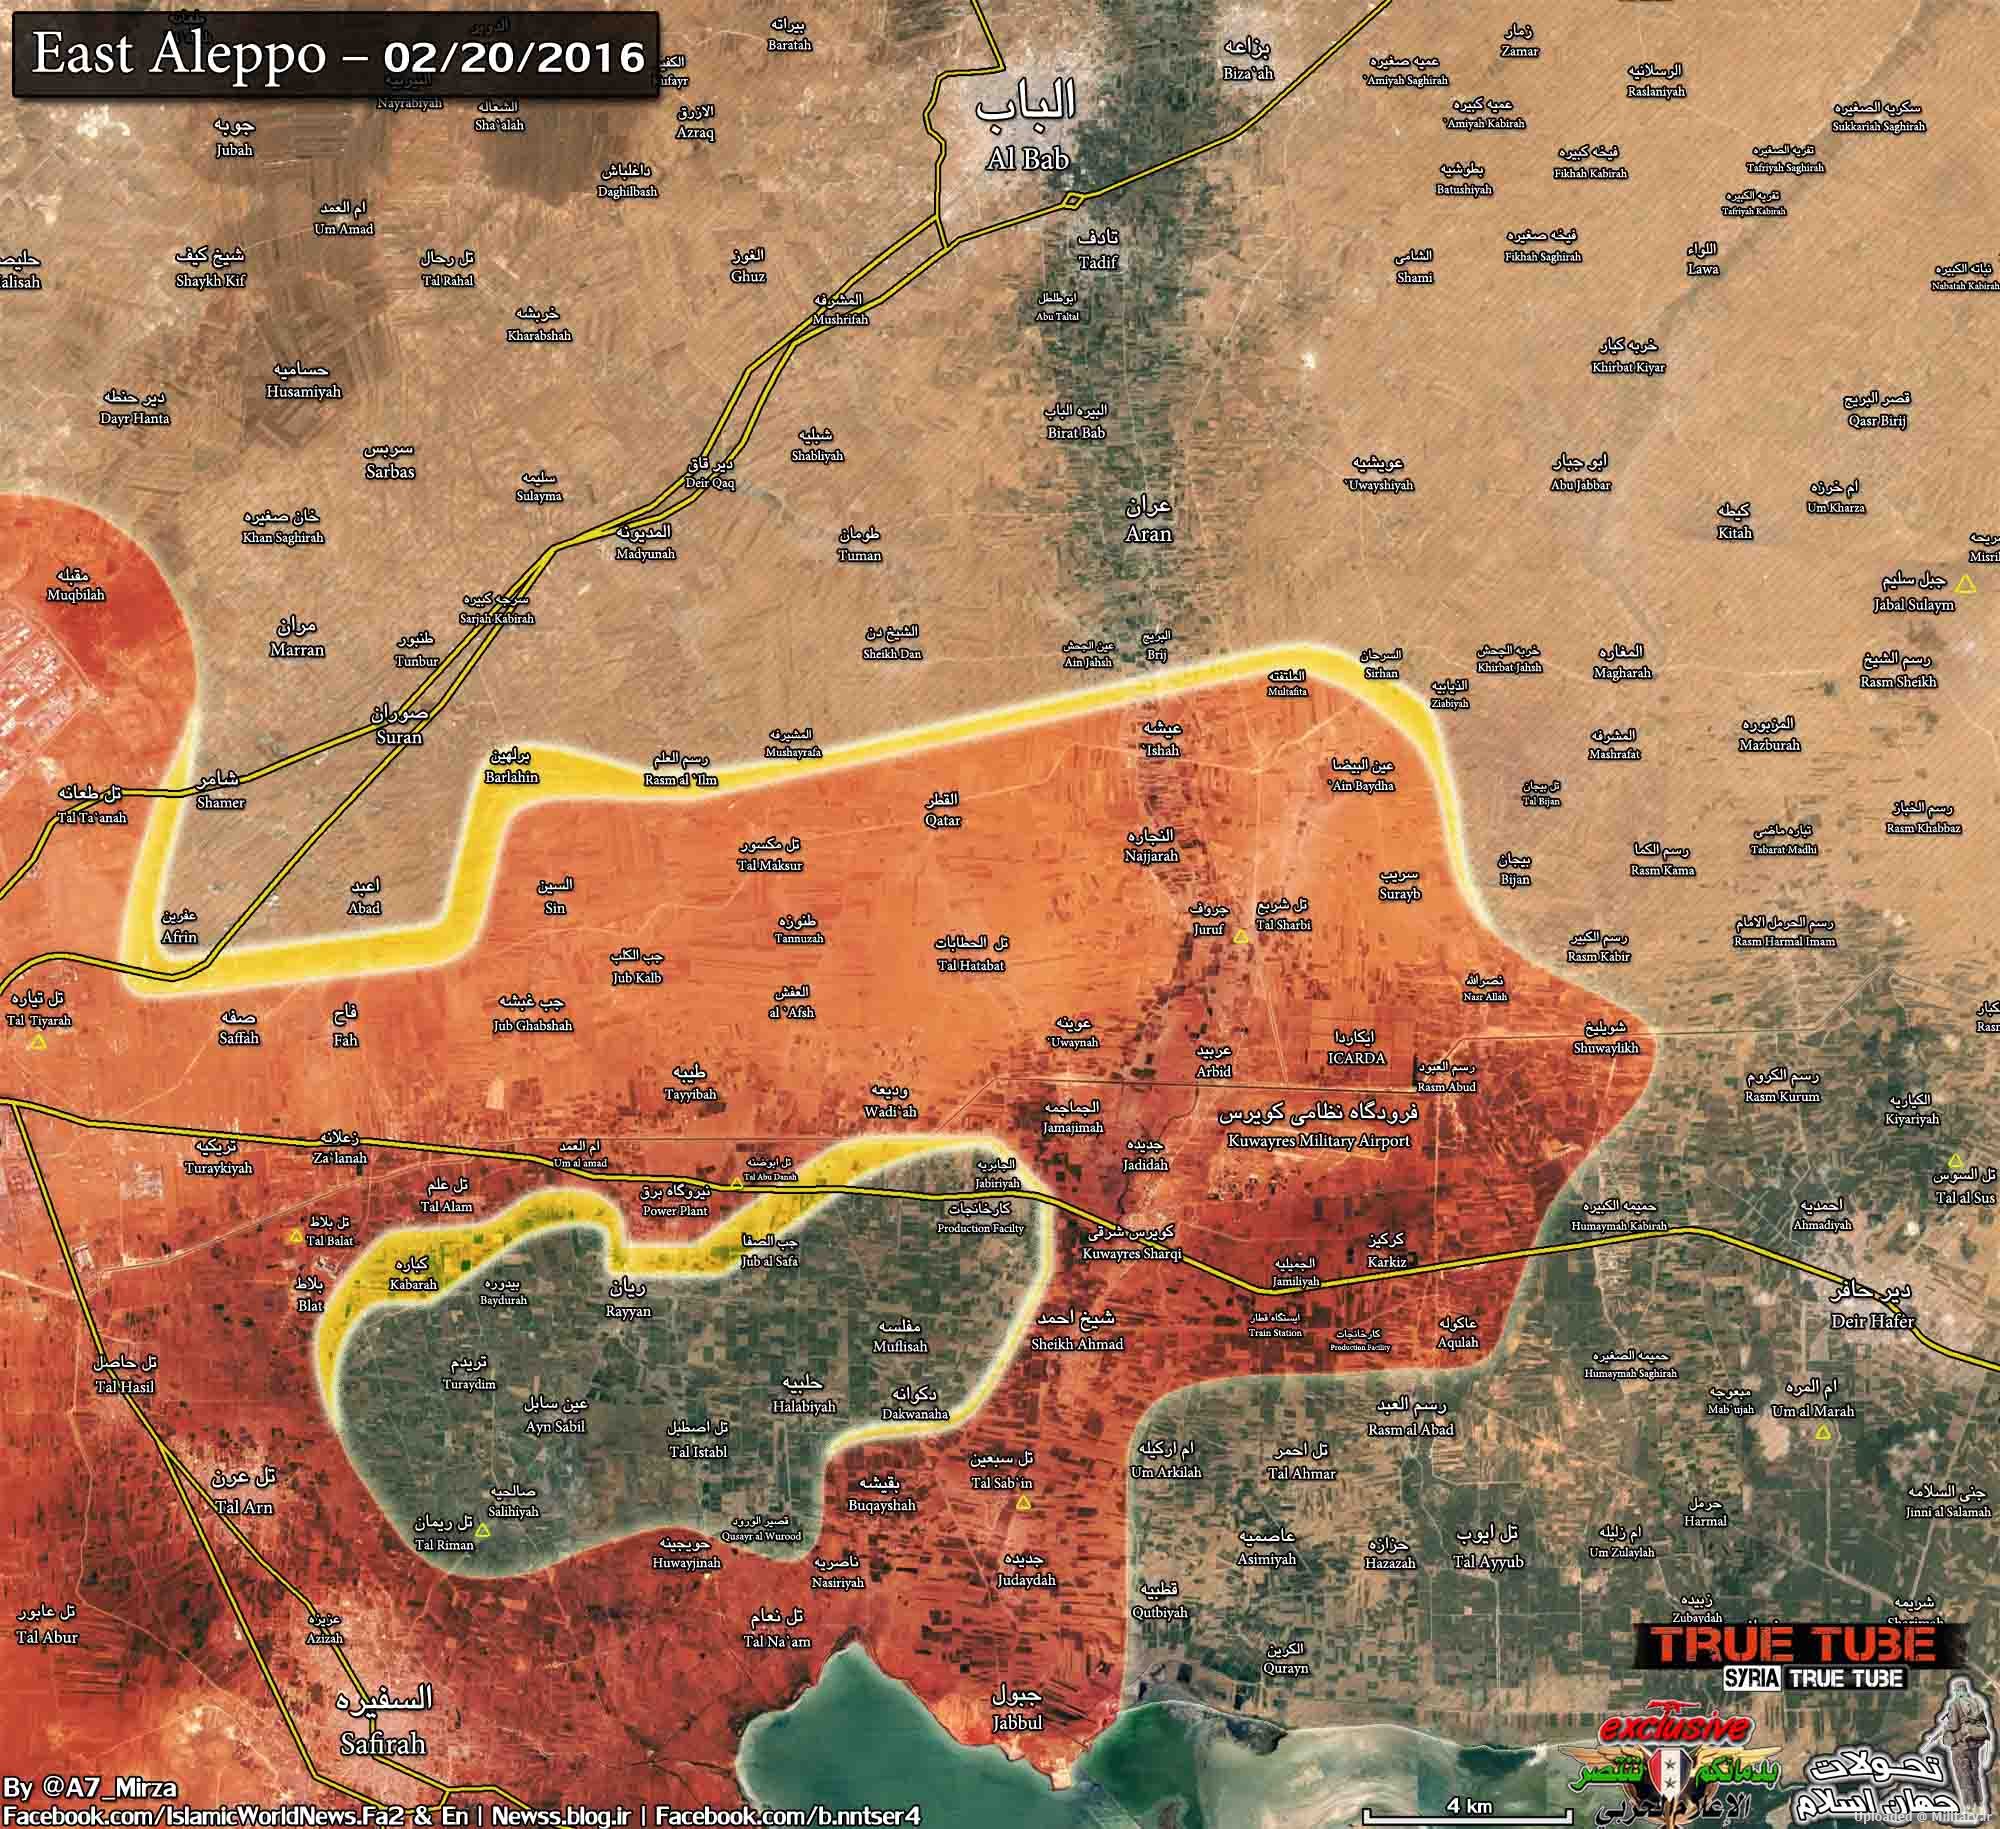 East-Aleppo-4km-cut1-20feb-1Esfand-v2-lo